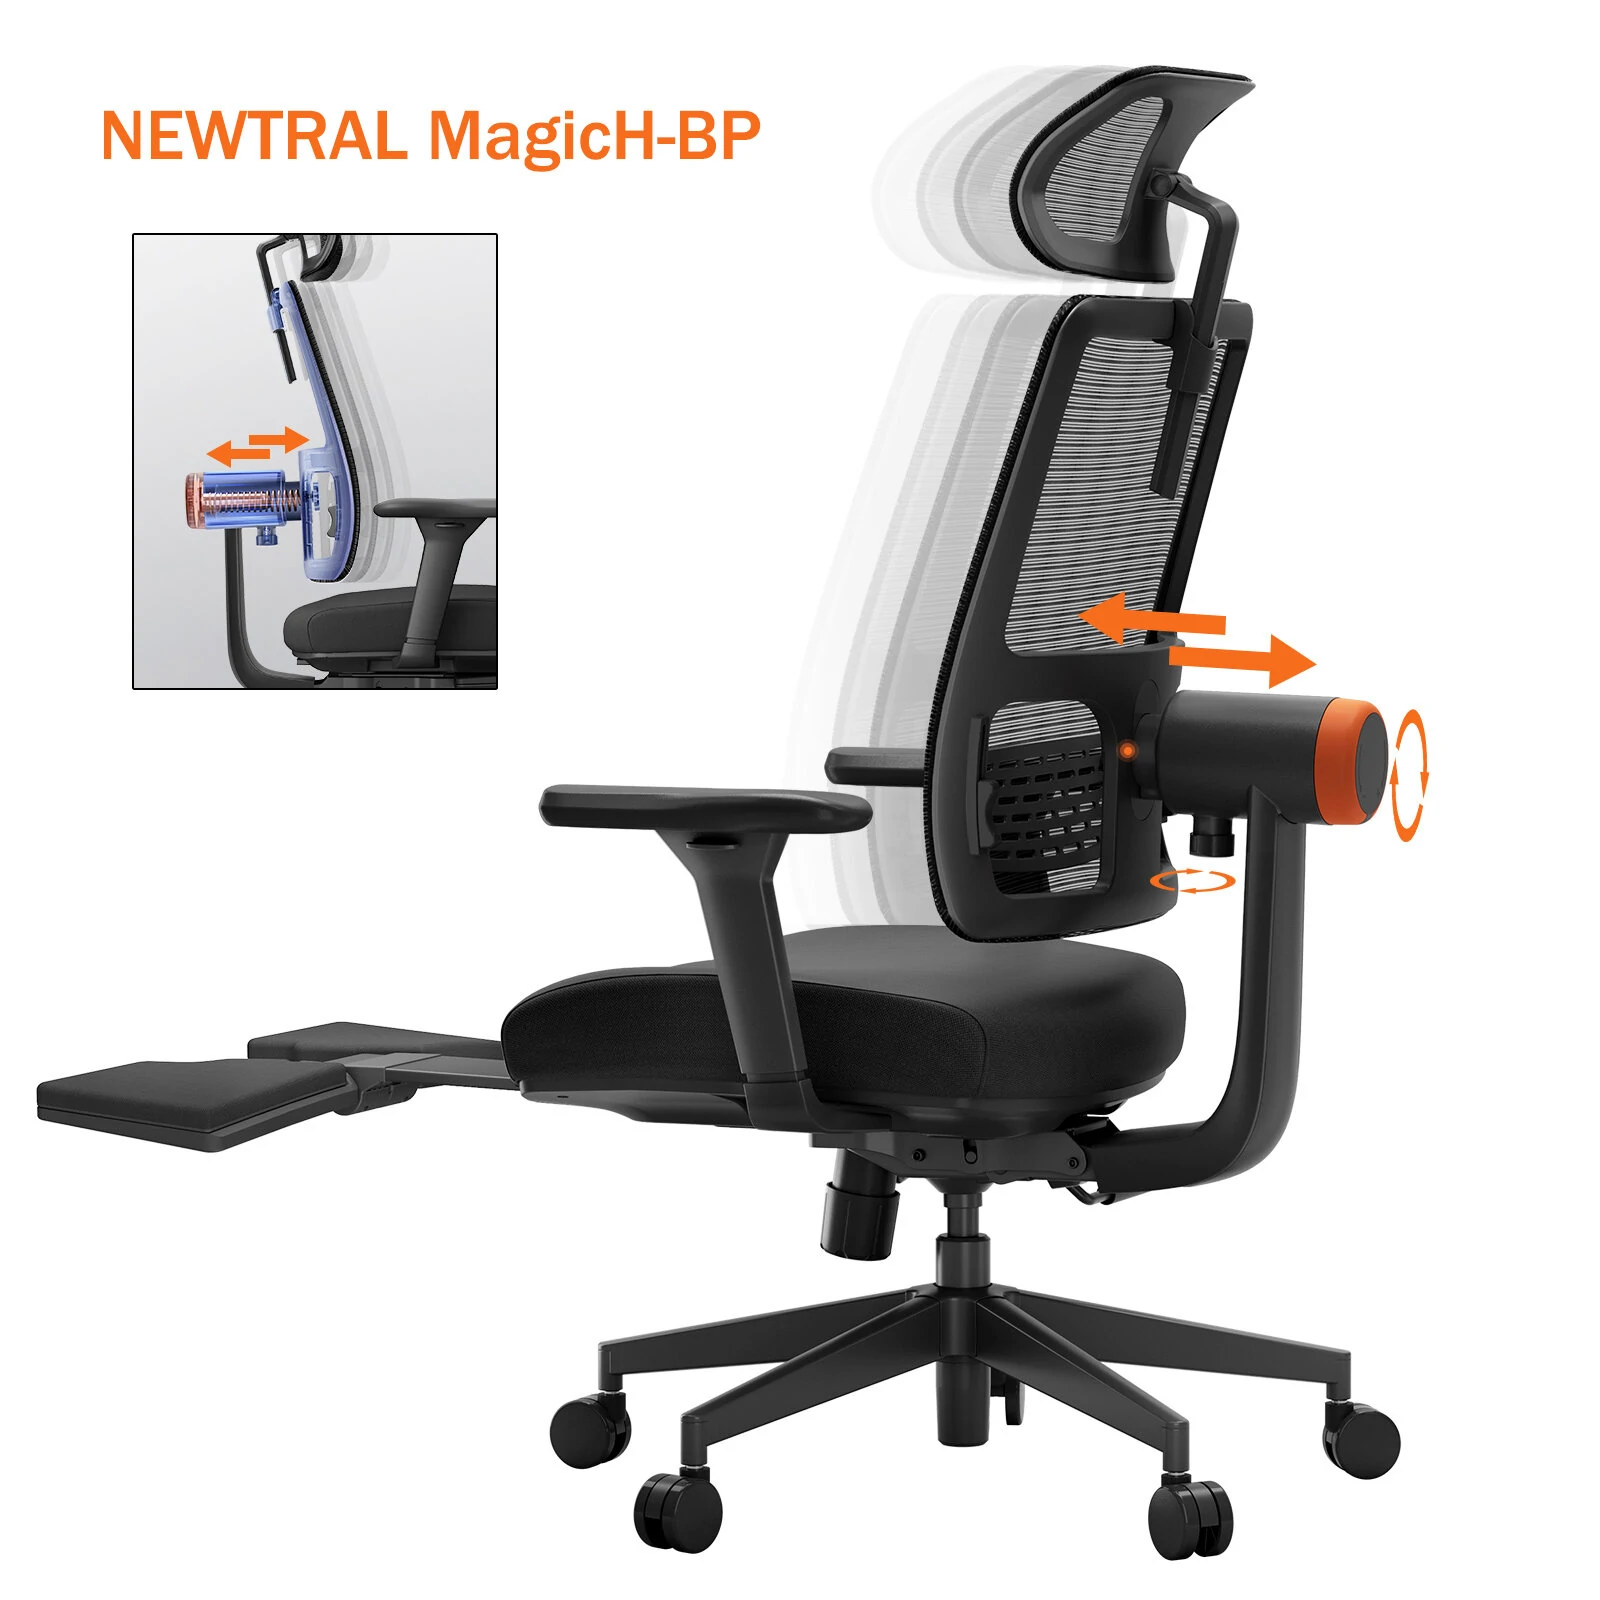 Cadeira ergonômica Newtral MagicH-BP com apoio para os pés